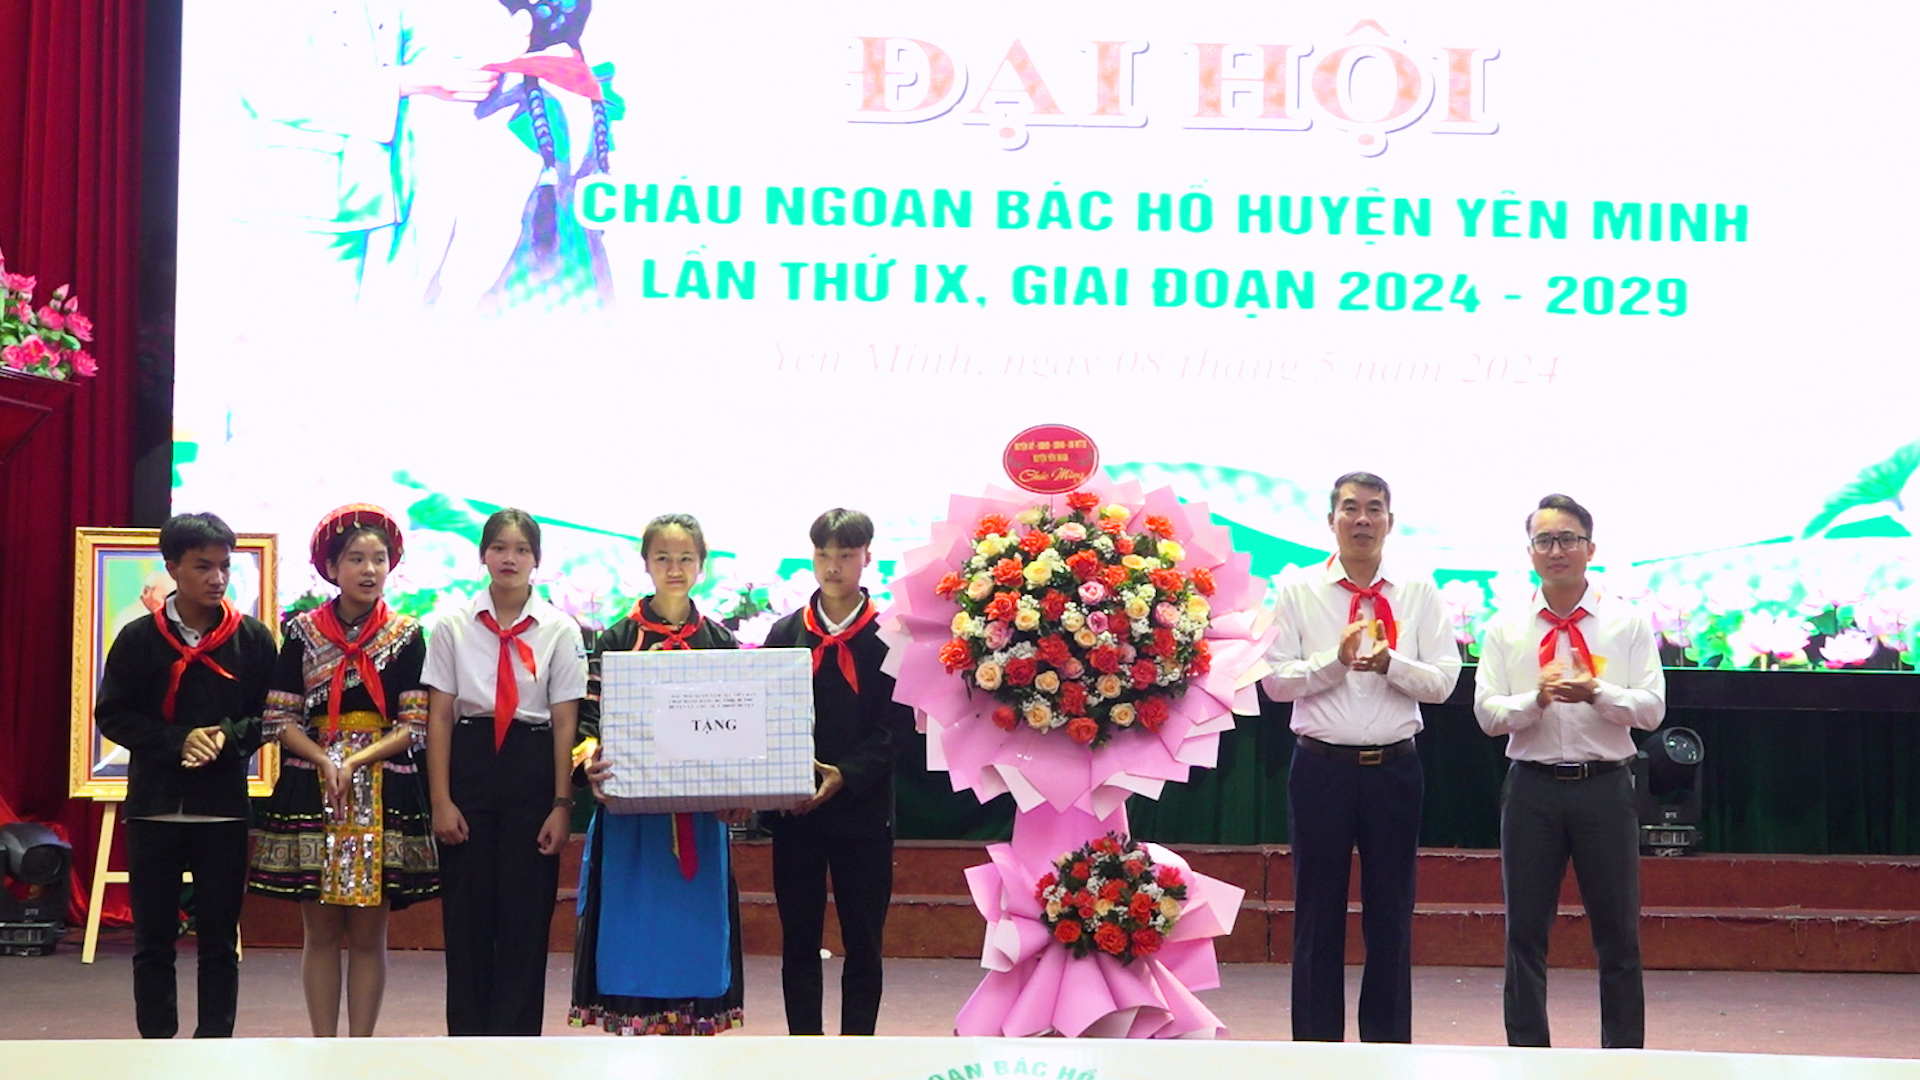 Đại hội Cháu ngoan Bác Hồ huyện Yên Minh lần thứ IX giai đoạn 2024 - 2029